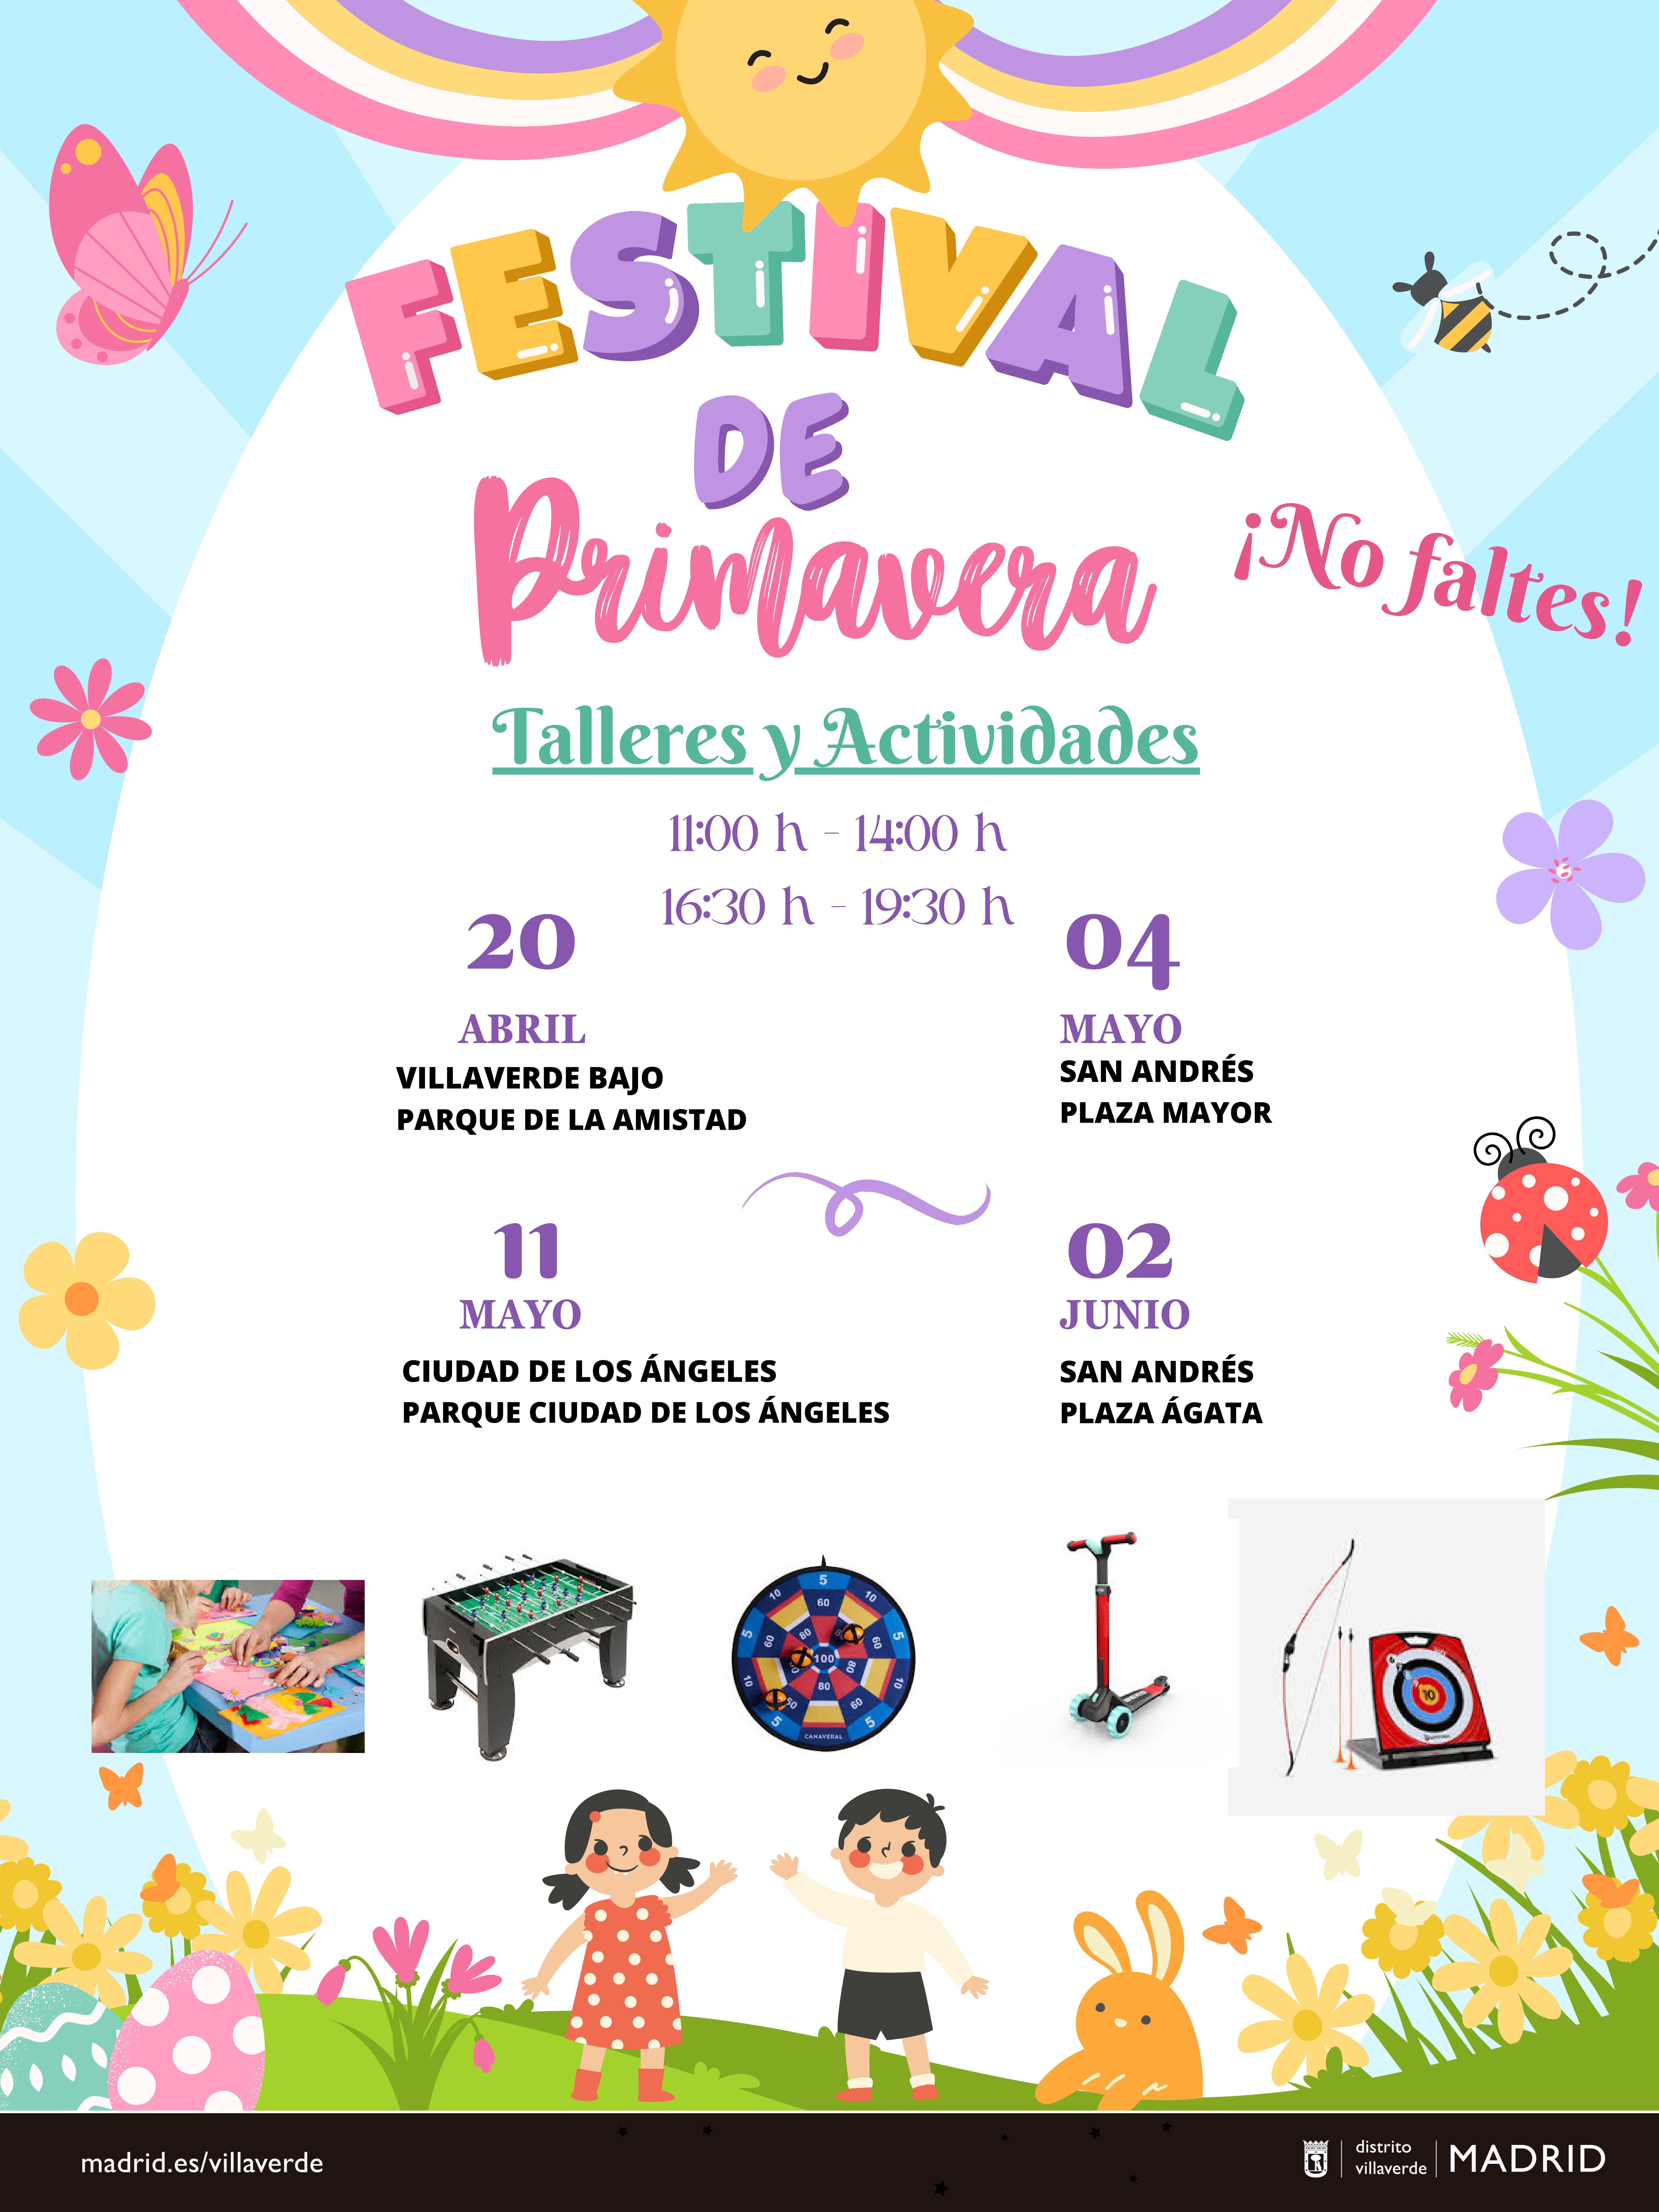 Actividades del Festival de Primavera del Distrito de Villaverde